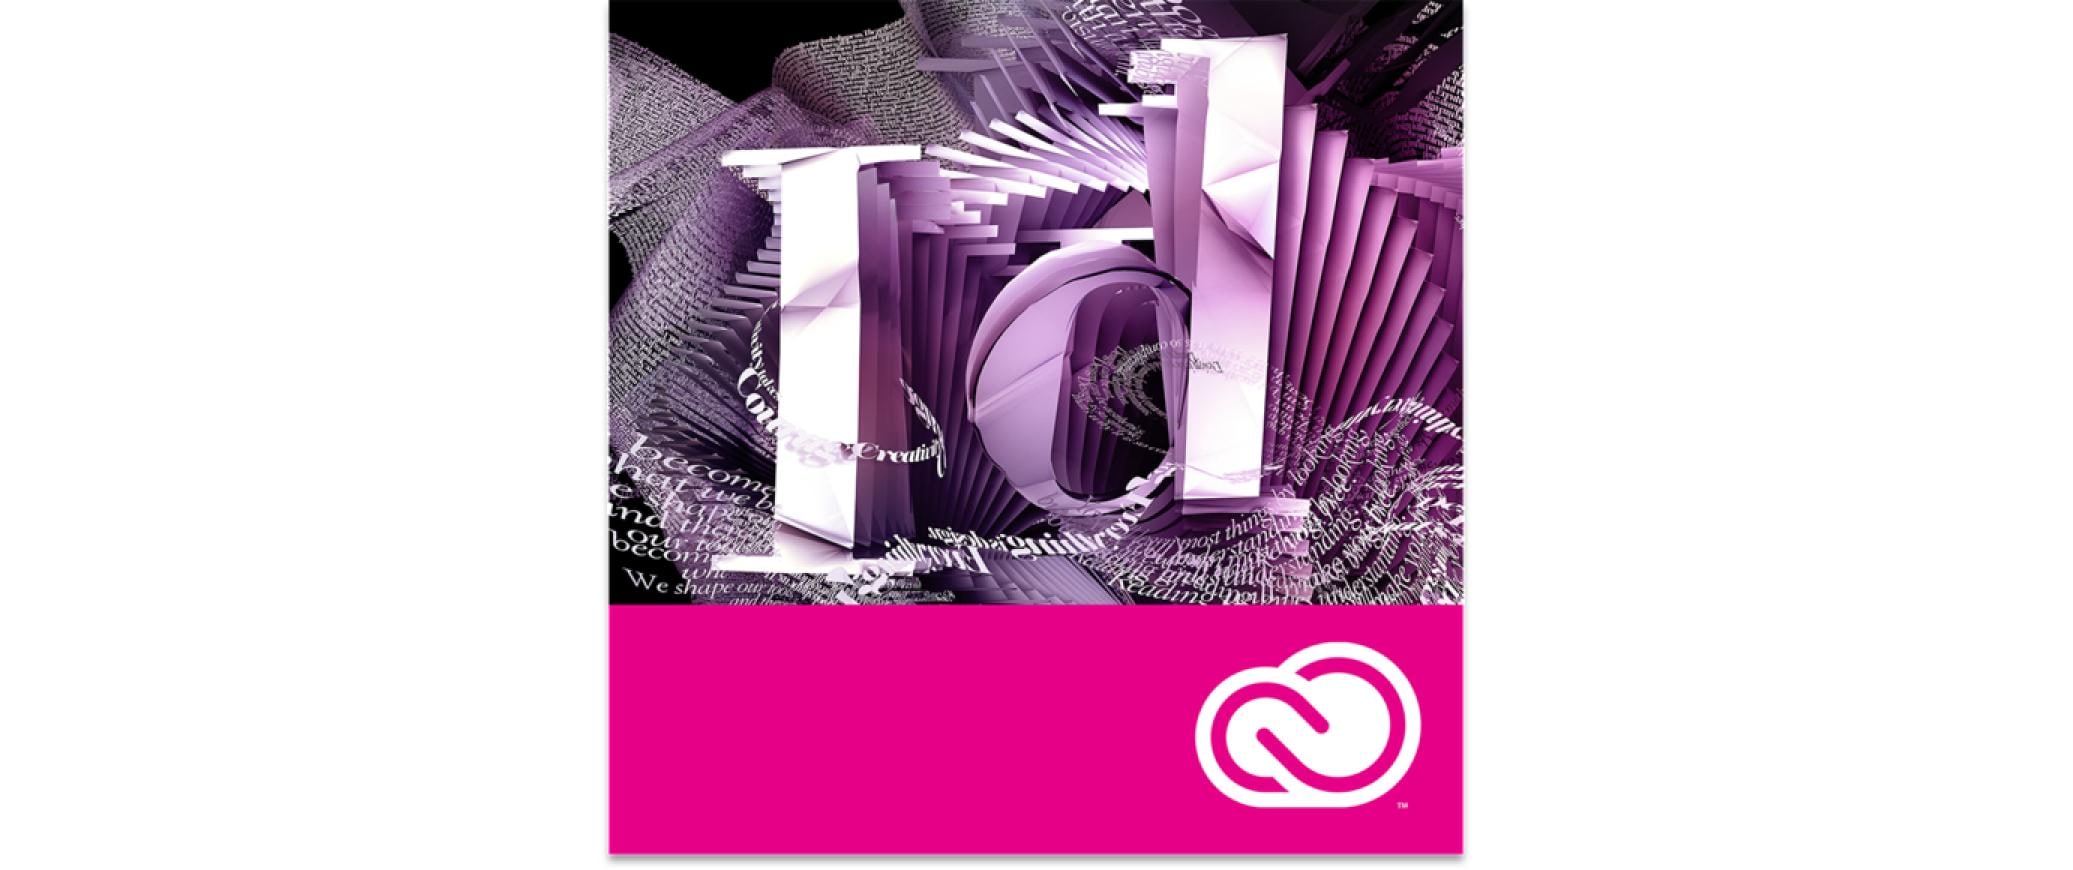 Adobe InDesign CC 1-9 User